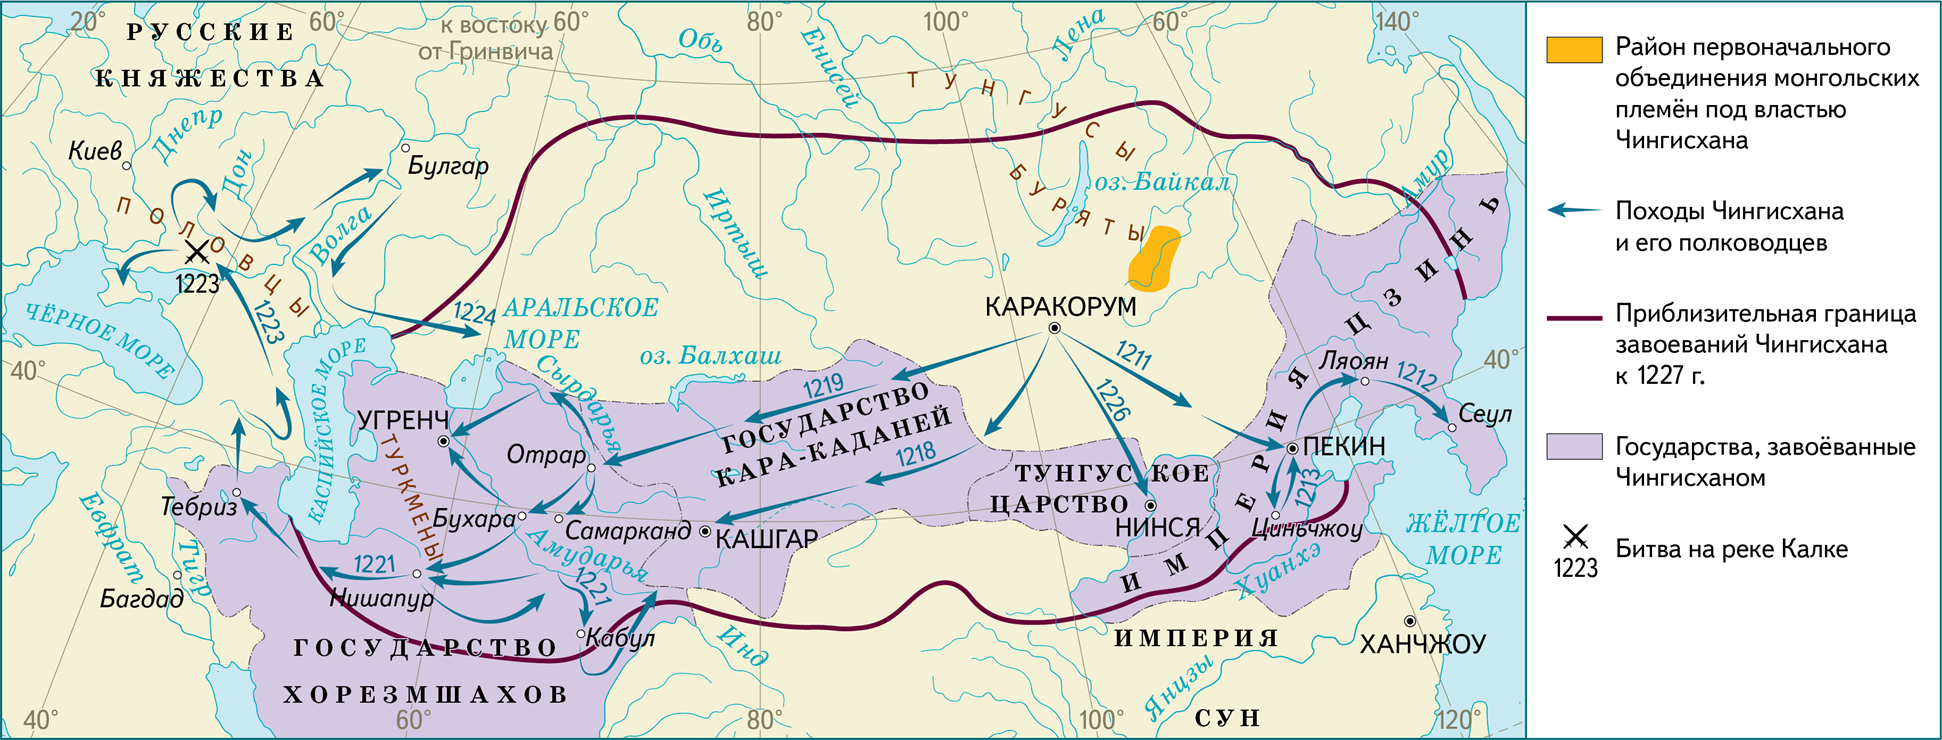 Походы великого хана. Монгольская Империя 1227. Завоевания Чингисхана карта. Карта завоеваний Монголии. 1206-1227 Правление Чингисхана.